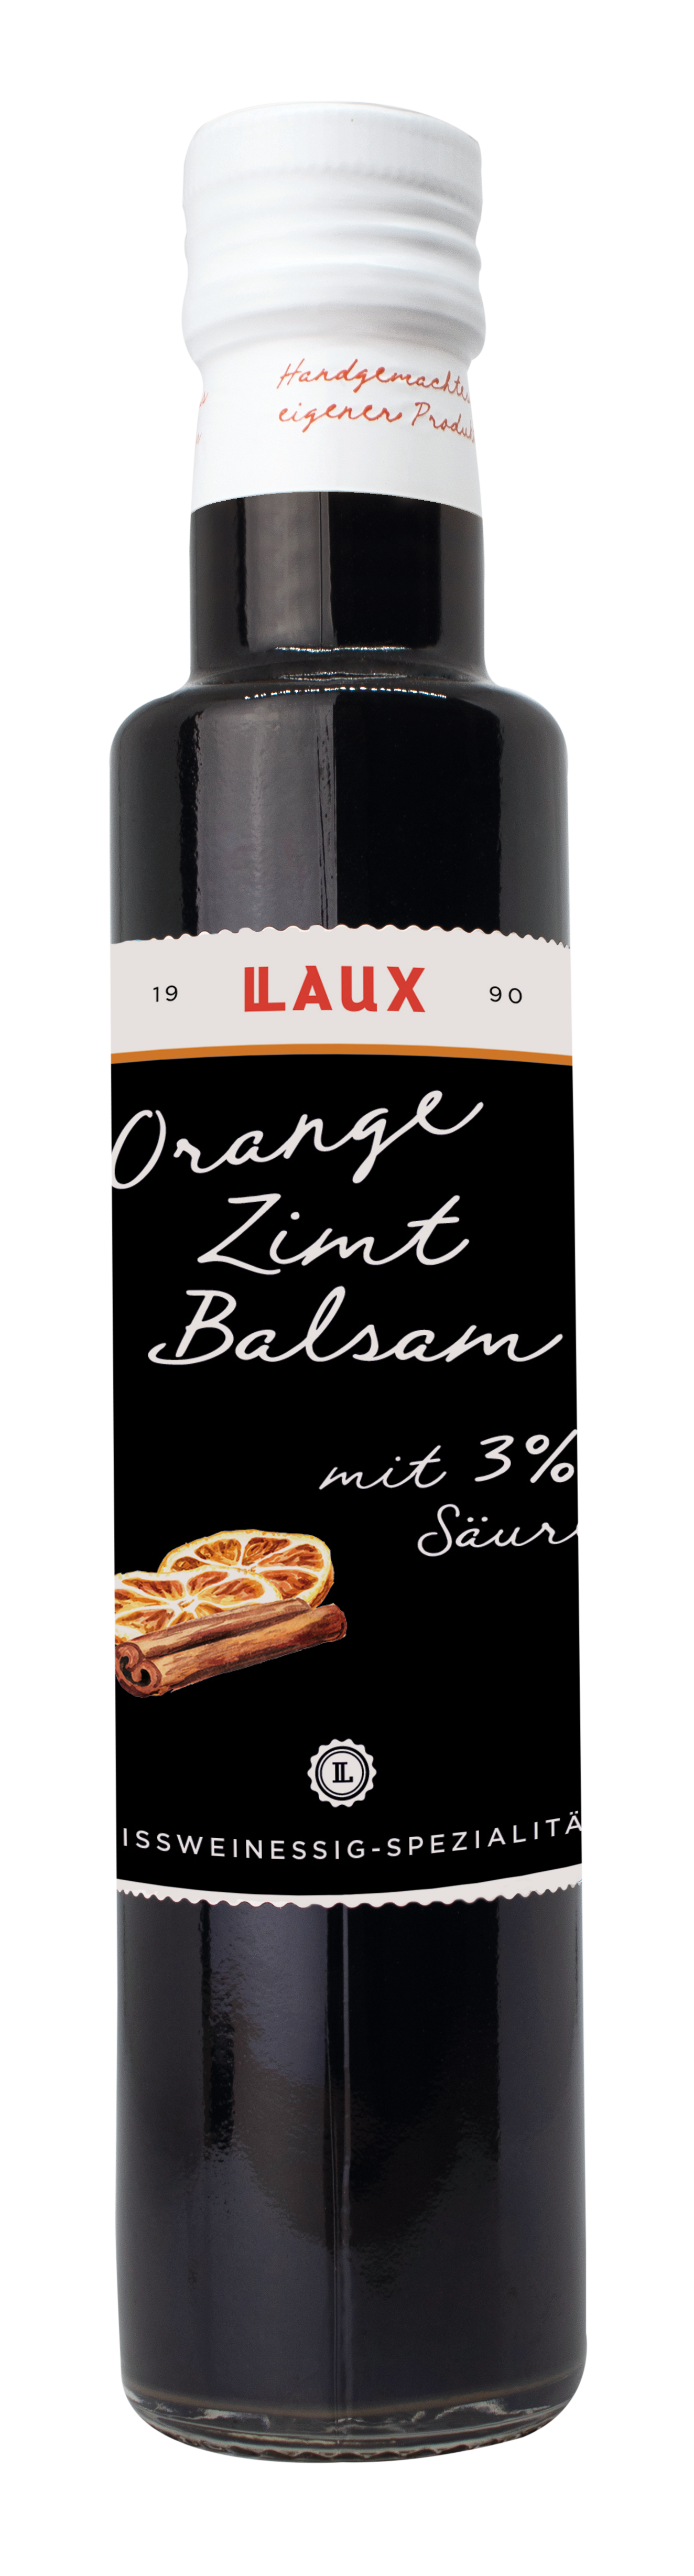 Orangen-Zimt Balsam Essig - 250ml Flasche